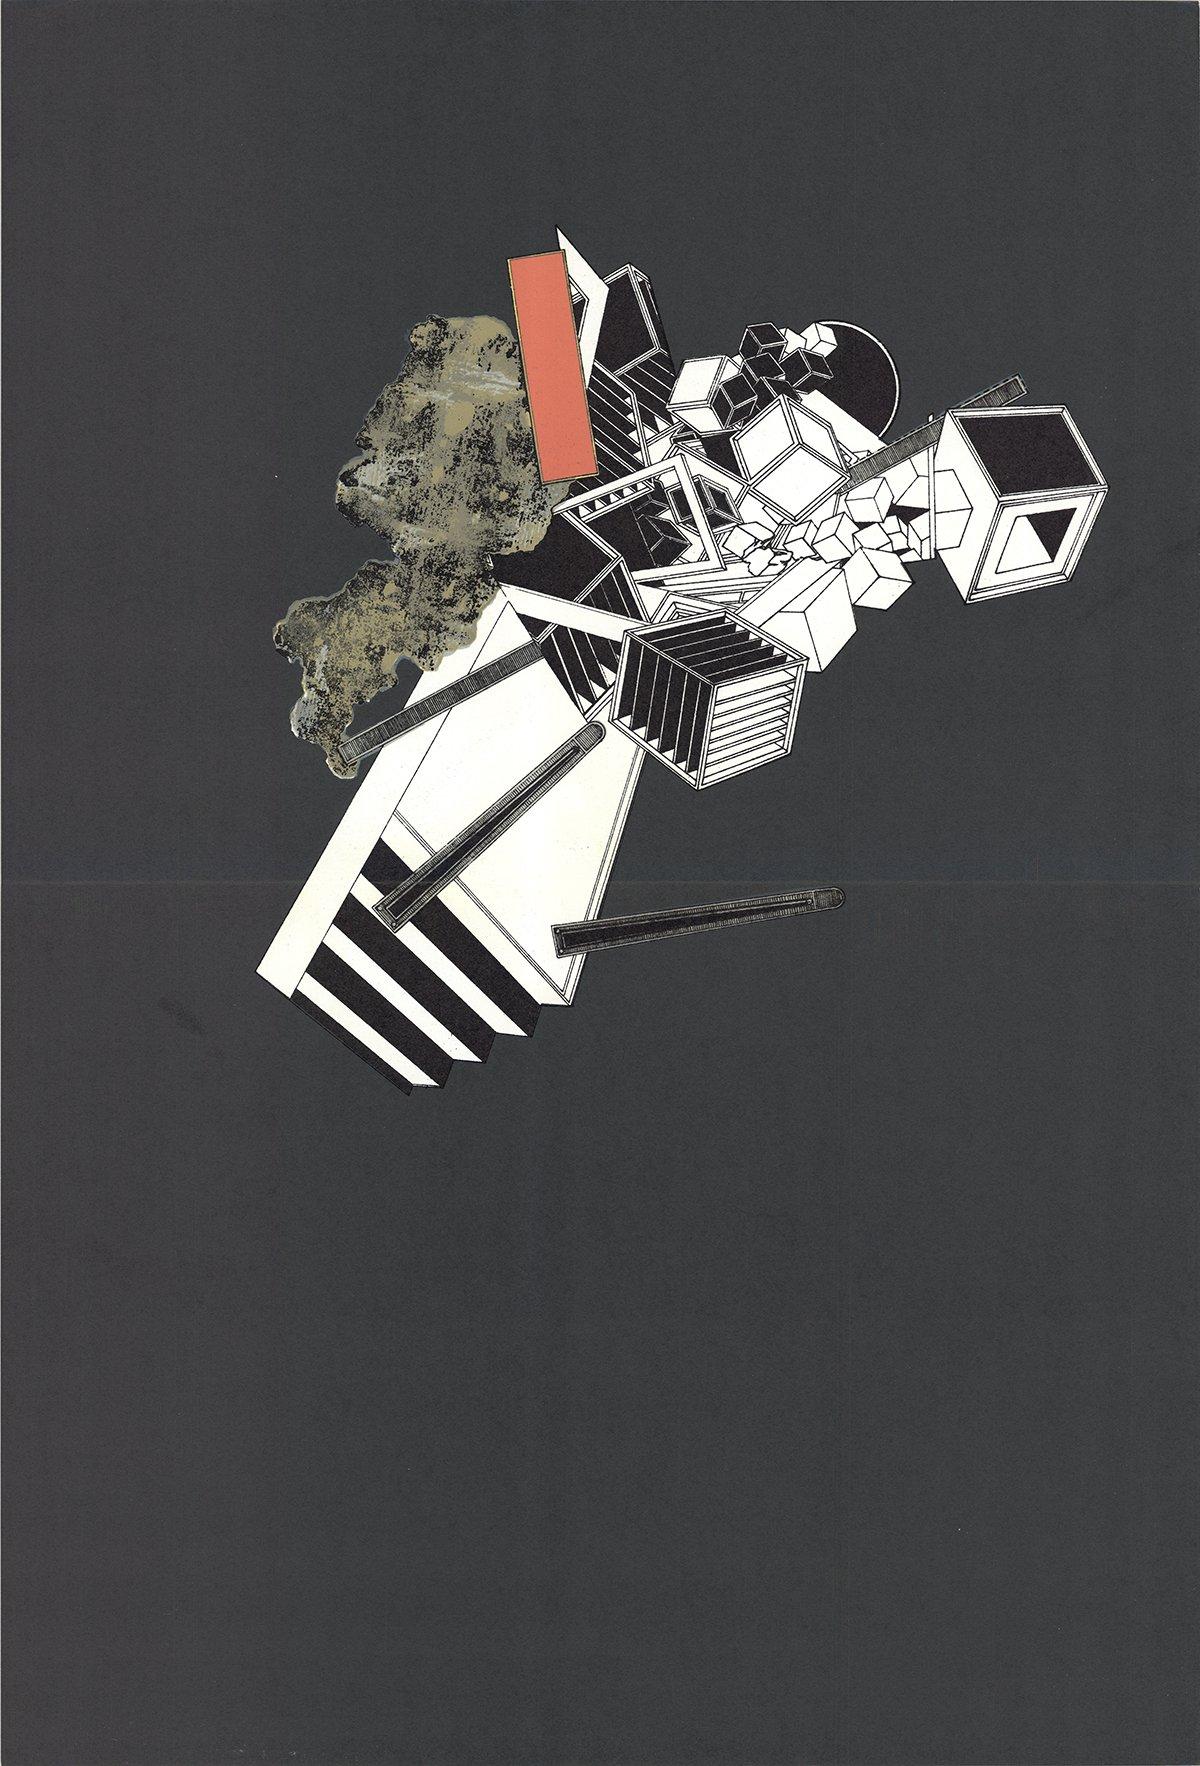 1969 Alain Le Yaouanc 'Étude géométrique sur noir' Surréalisme Gris, blanc, noir